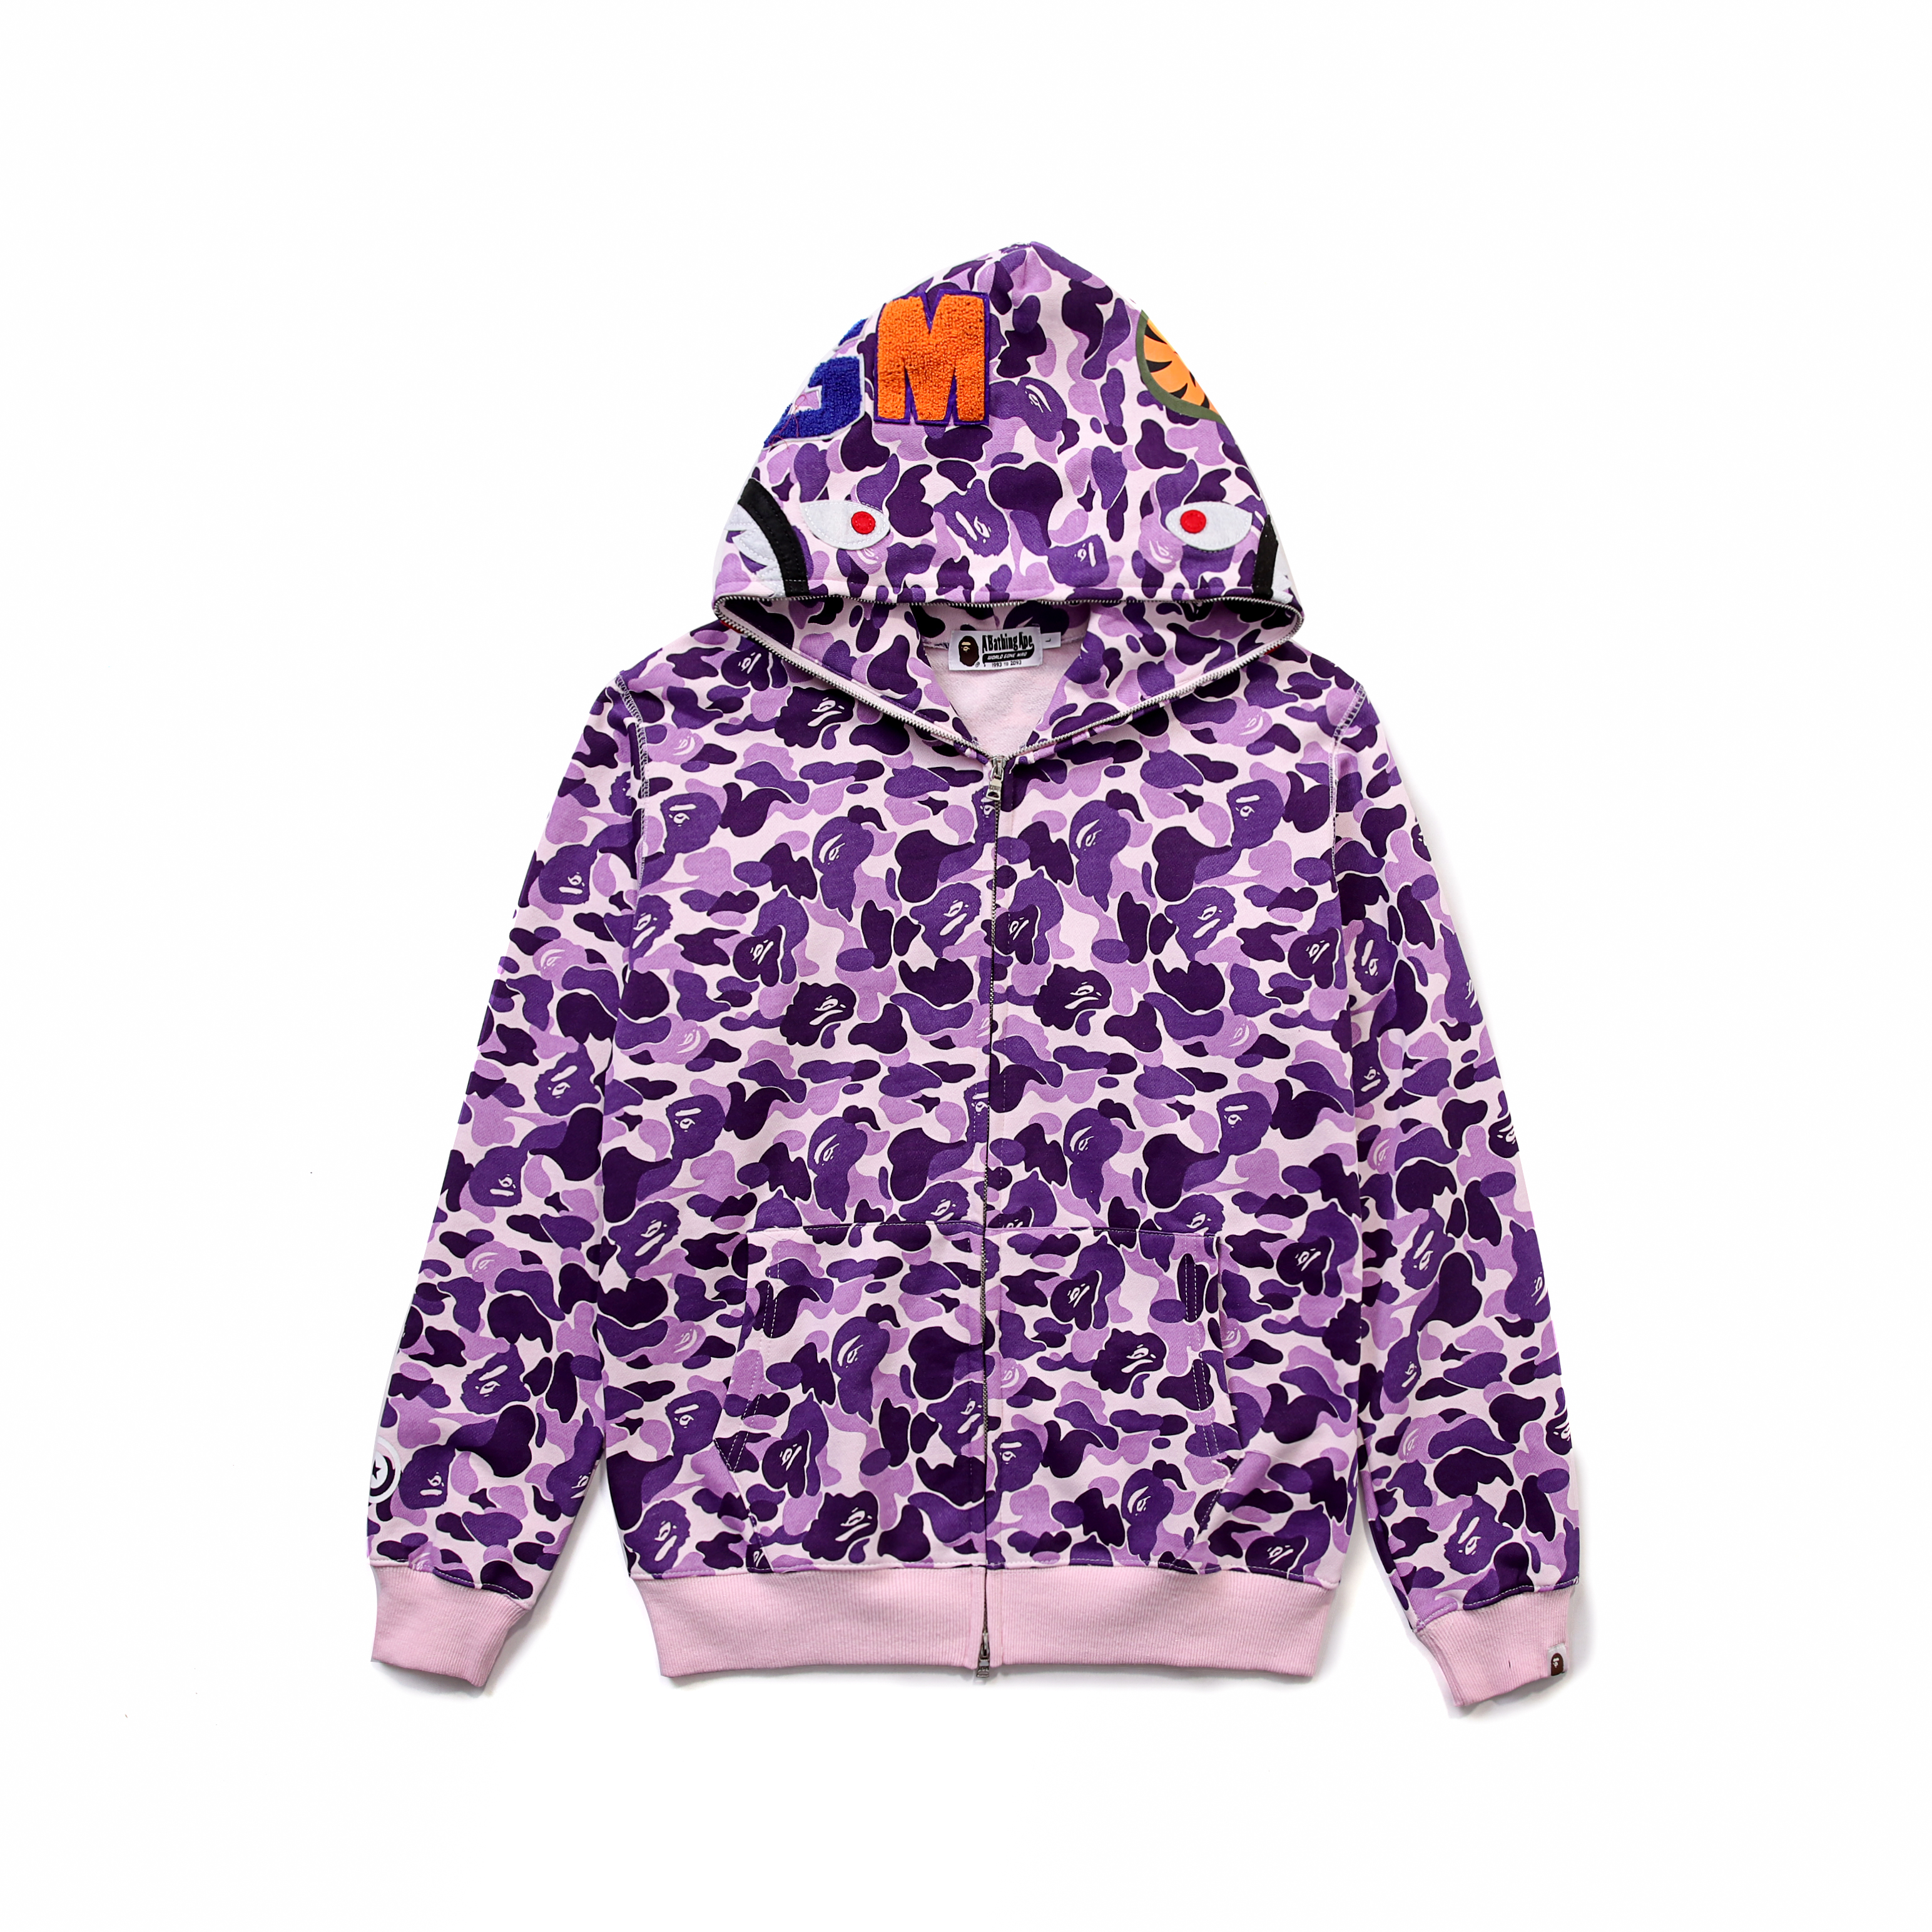 purple and orange bape hoodie